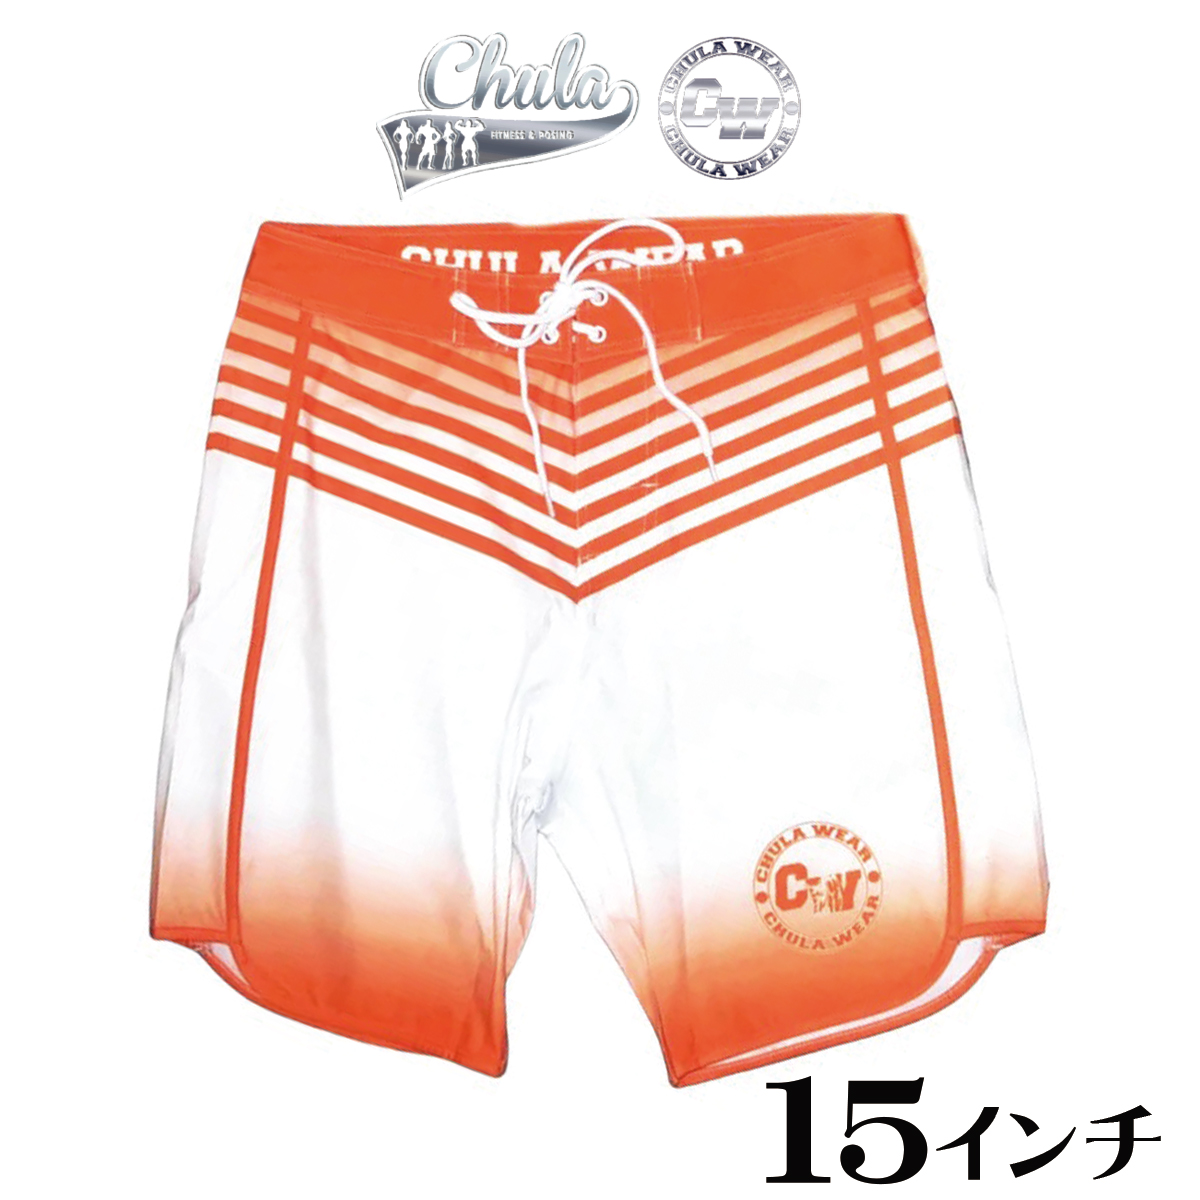 955 レア chula wear ステージショーツ Hot Rods 26-